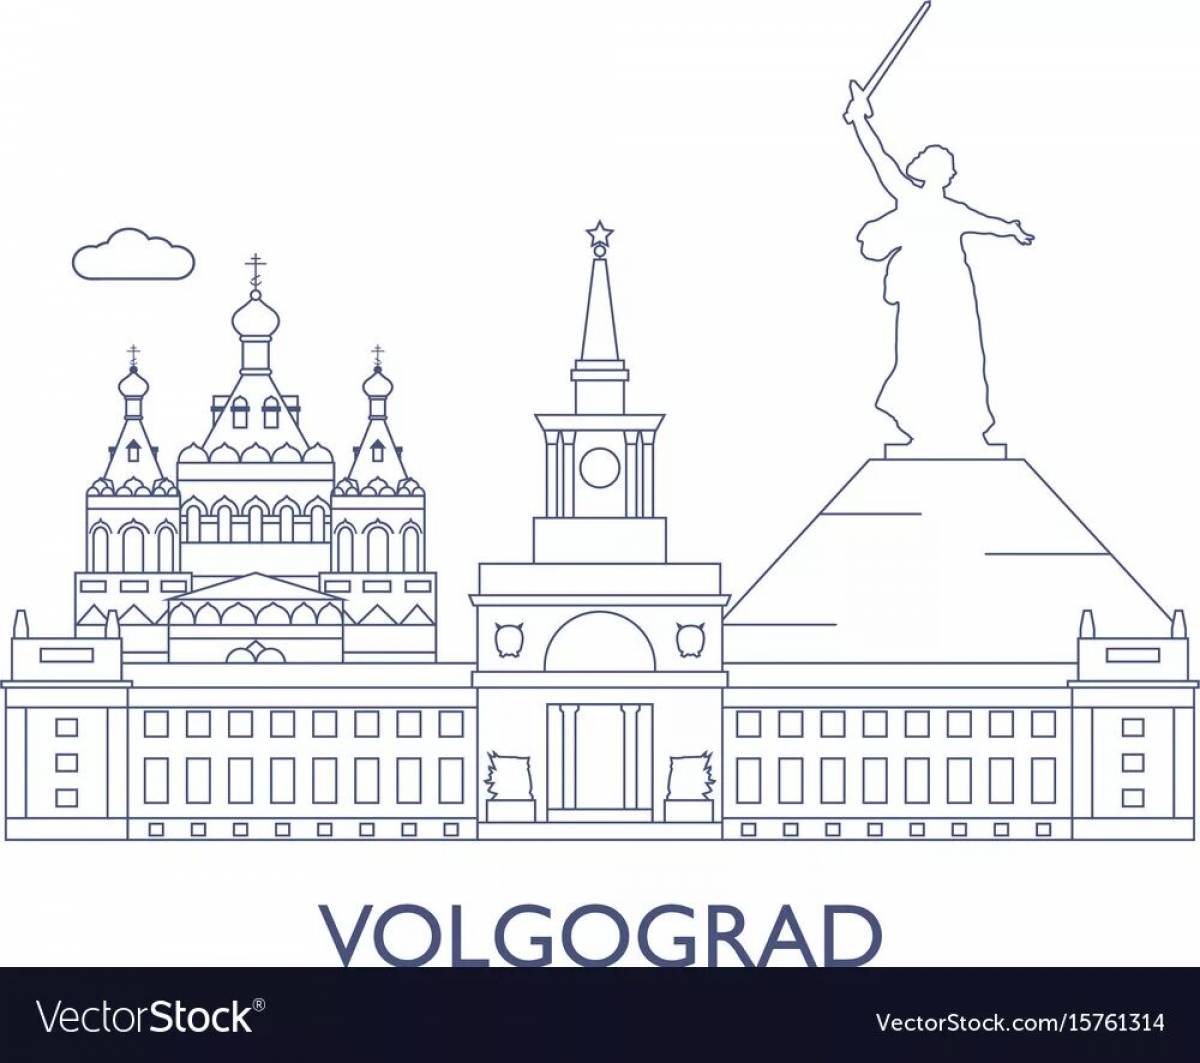 Volgograd for children #18